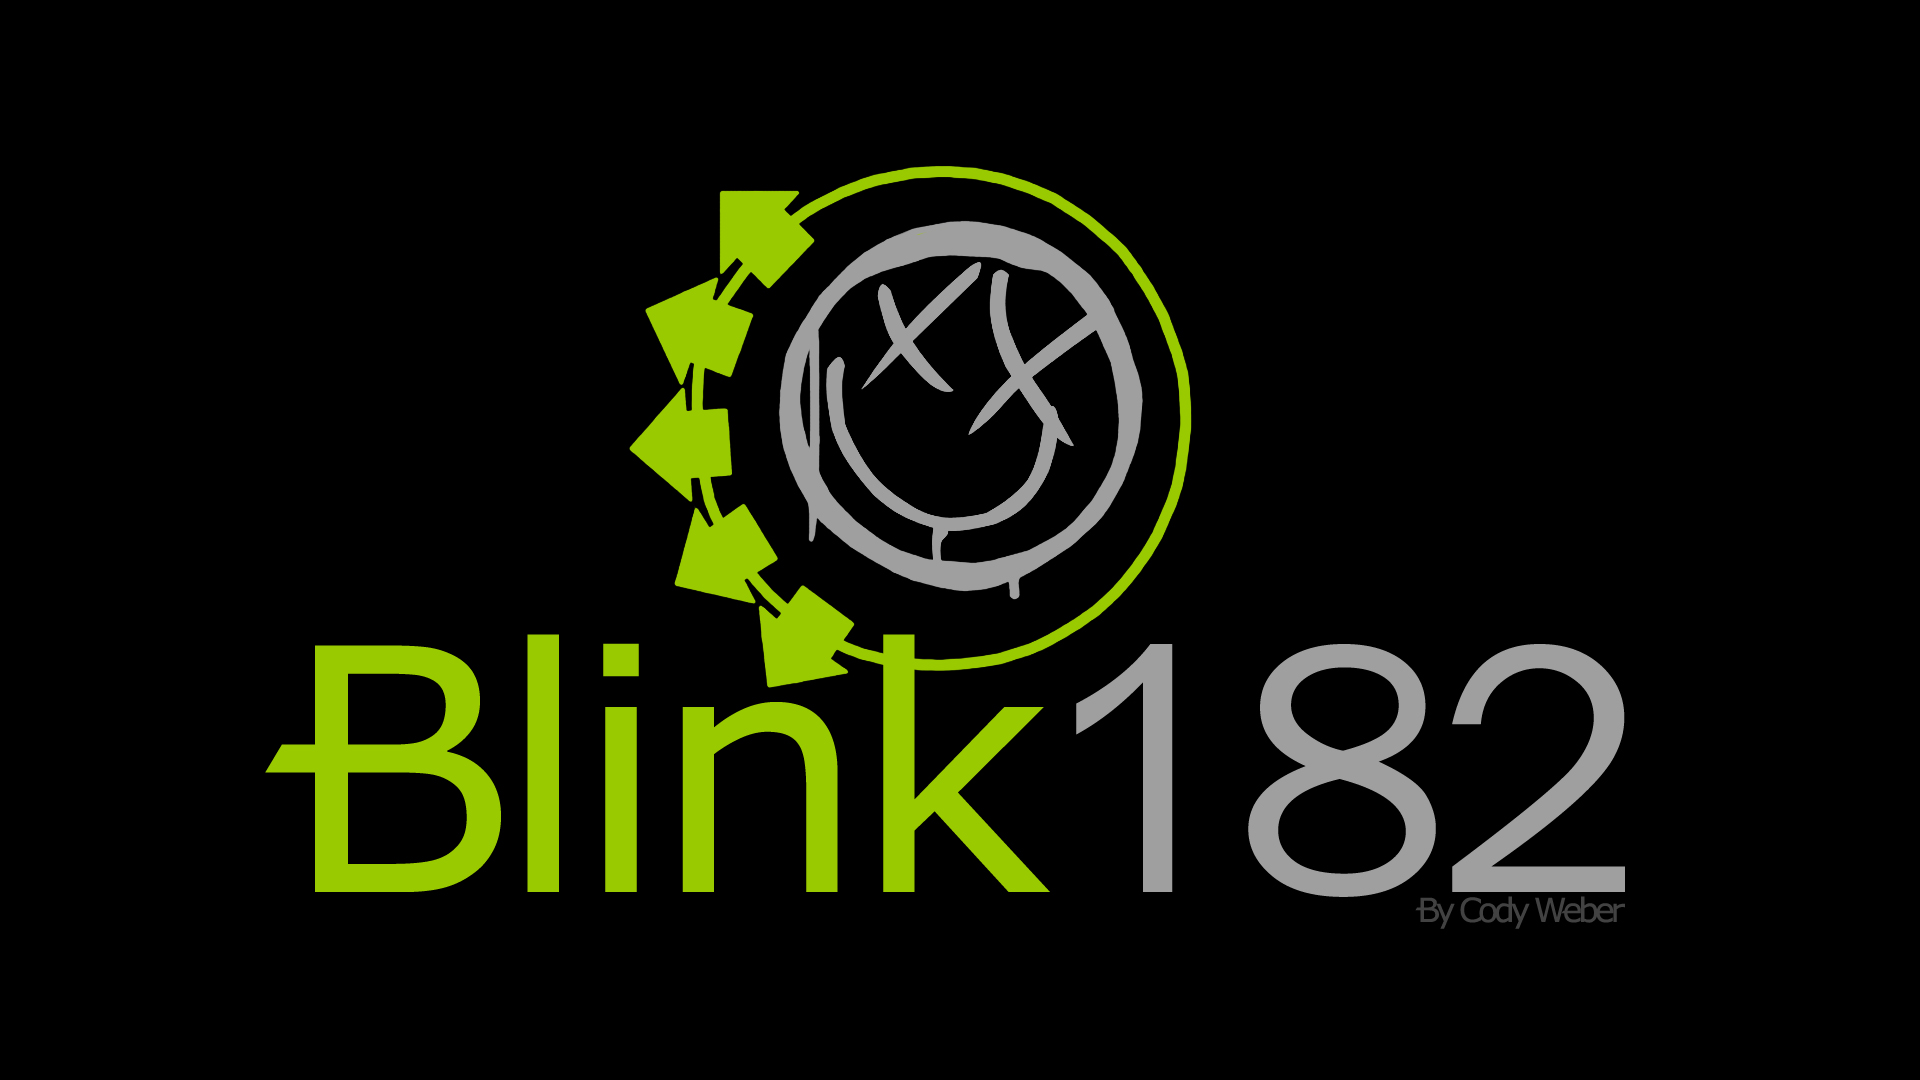 46+] Blink 182 Logo Wallpaper - WallpaperSafari